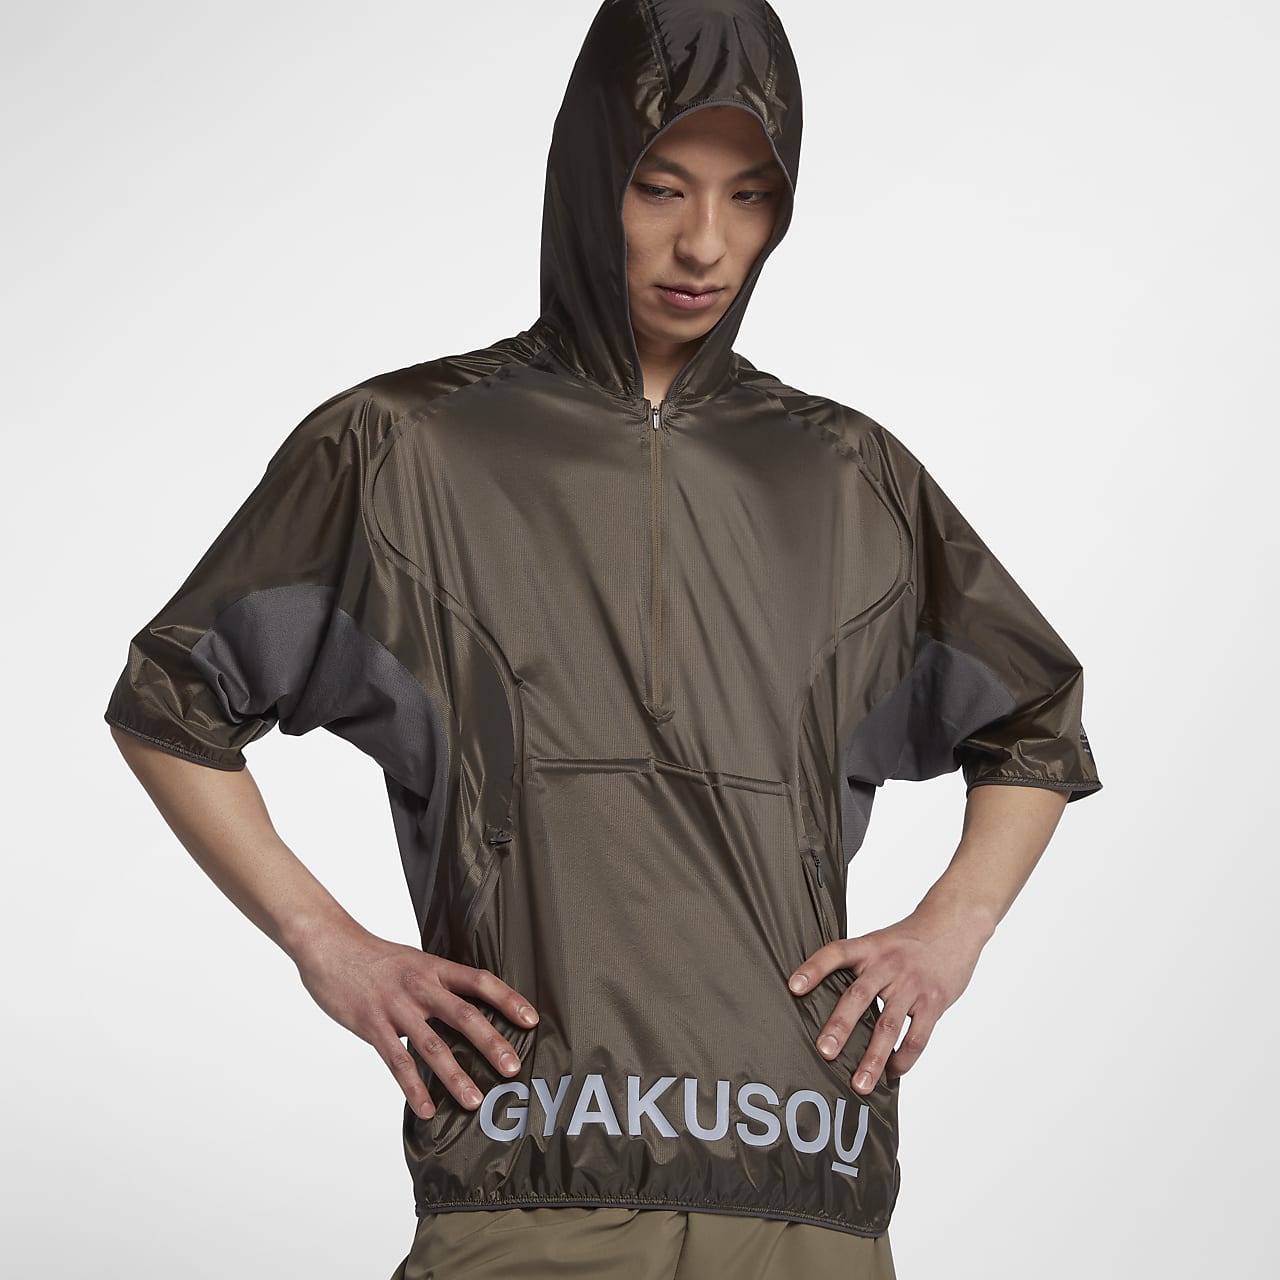 NikeLab Gyakusou Men's Short-Sleeve Jacket